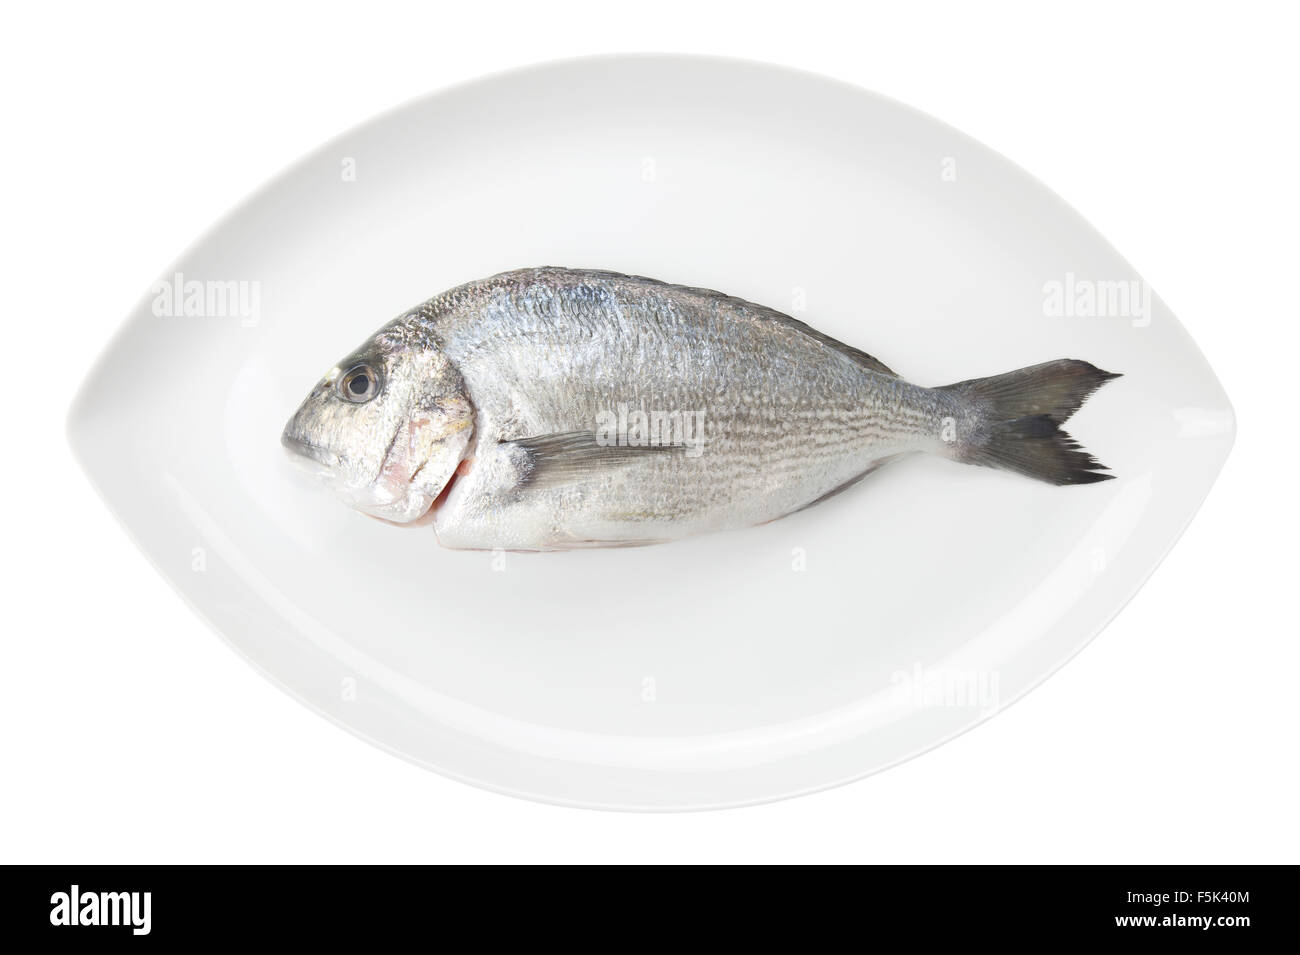 Dorada des fruits de mer sur un plat ovale blanc isolé sur fond blanc. Également connu sous le nom de dorade poisson de mer. Les aliments crus. Banque D'Images